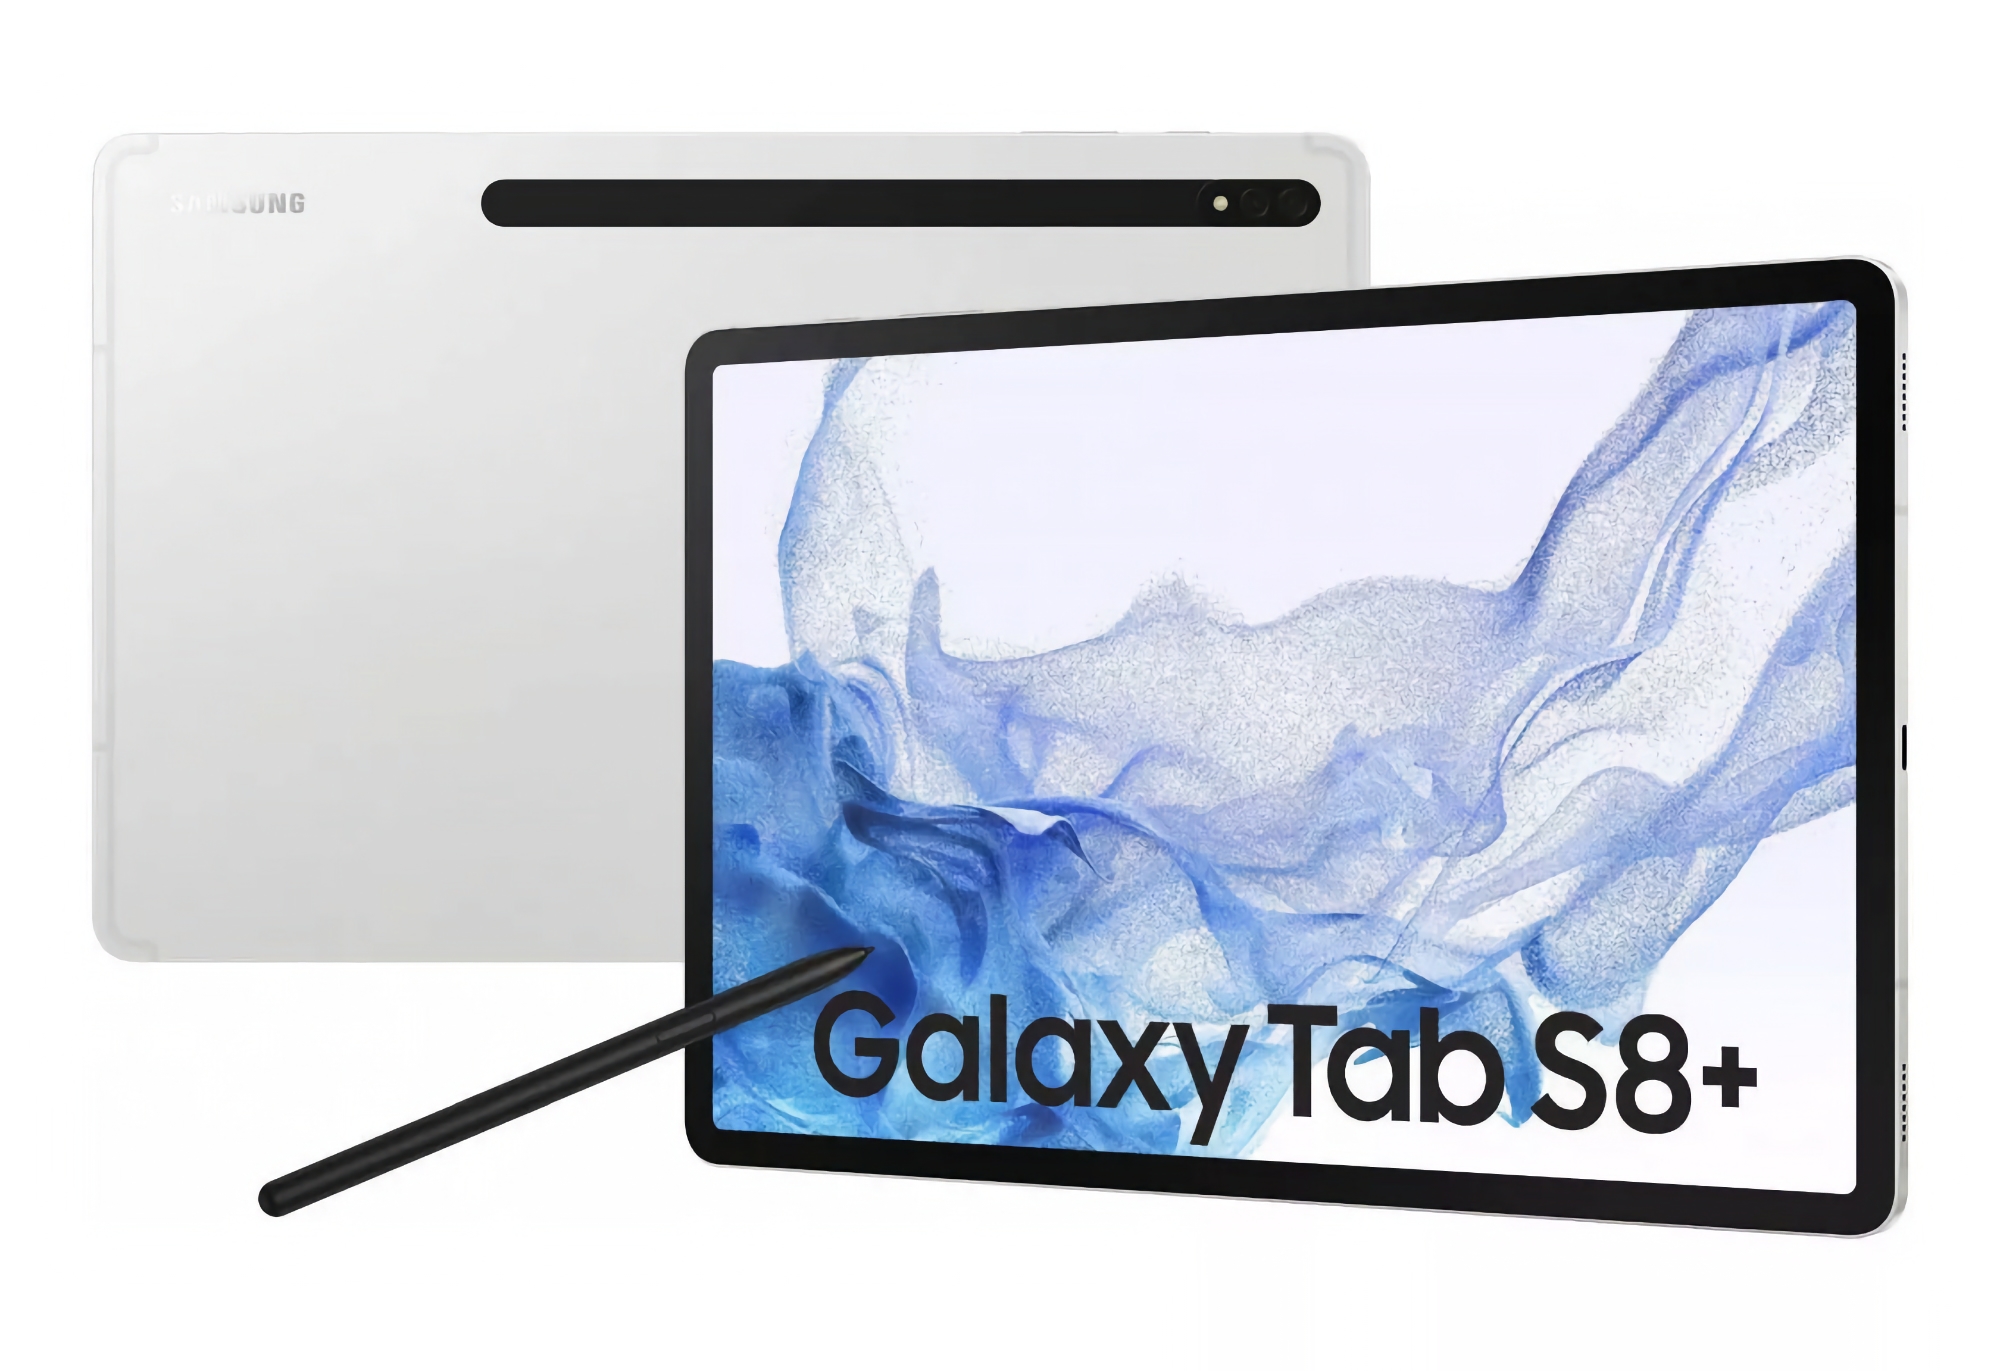 Samsung Galaxy Tab S8+ mit Wi-Fi und 128 GB Speicherplatz ist bei Amazon mit einem Rabatt von $300 erhältlich